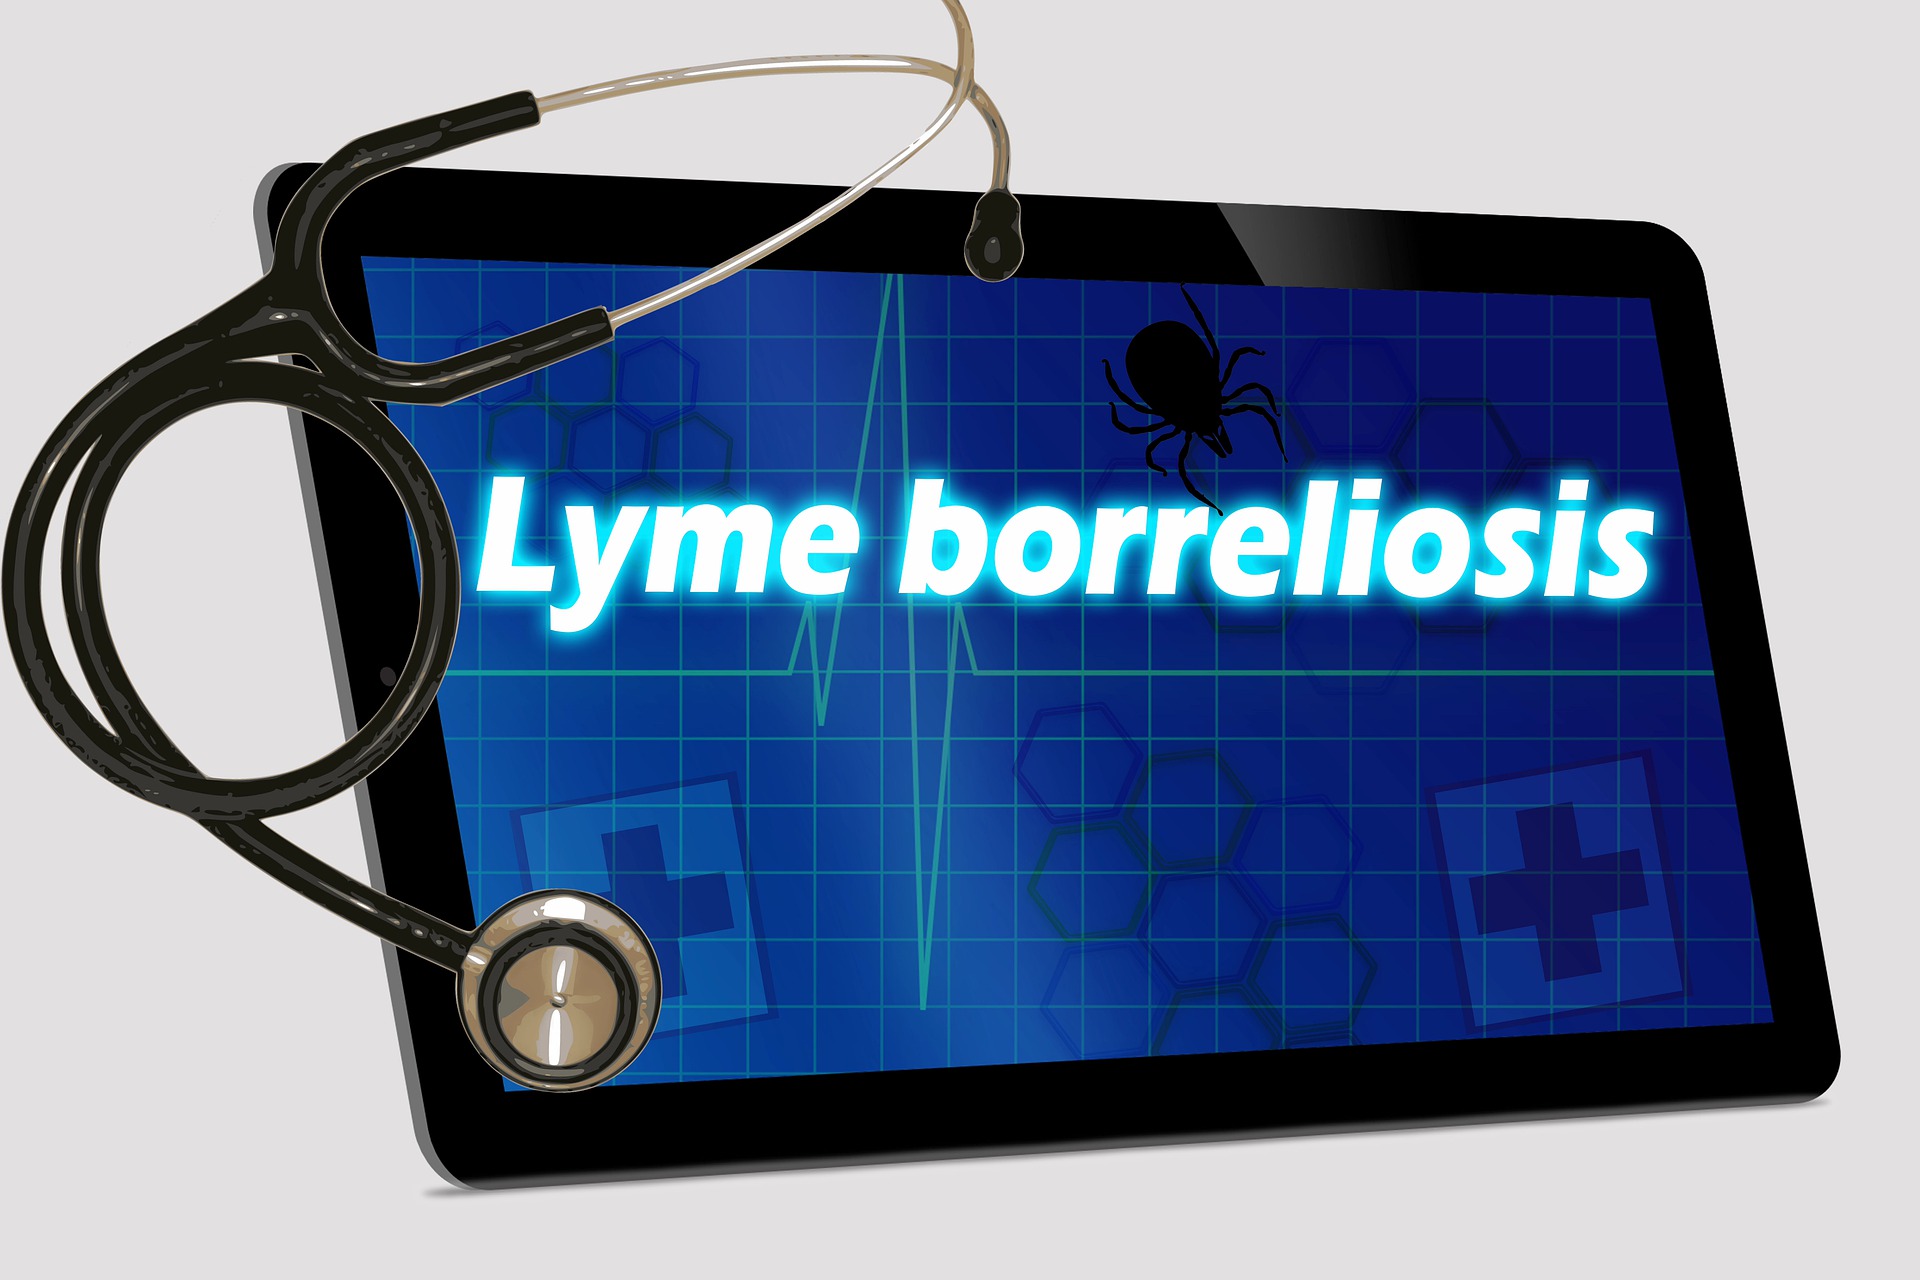 lyme-disease-4669319_1920